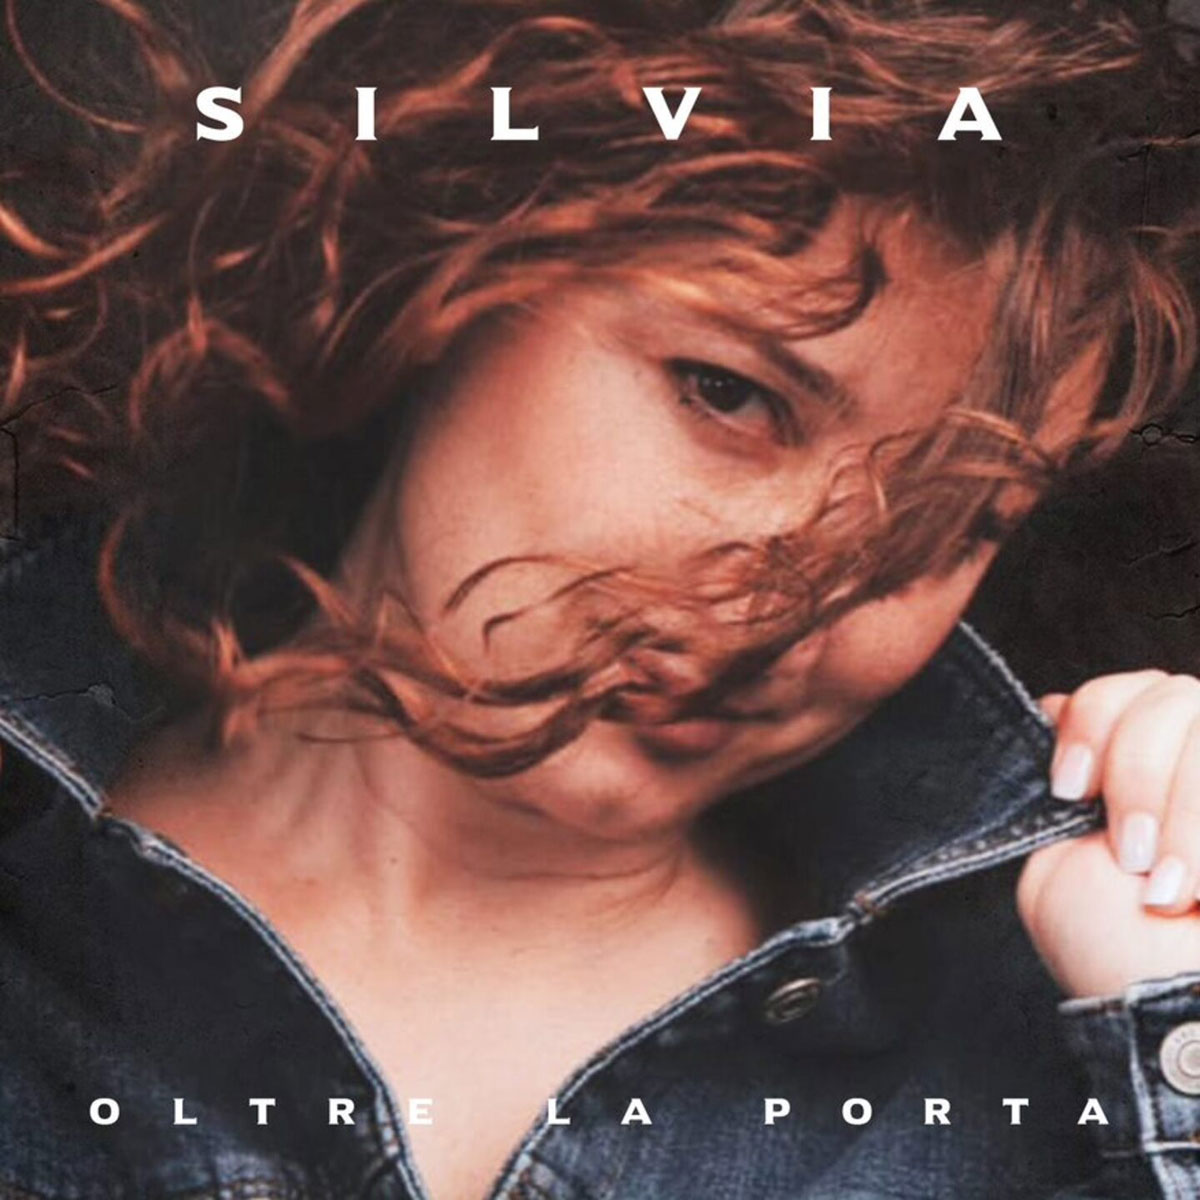 Dal 19 gennaio 2024 sarà in rotazione radiofonica “Oltre la porta”, il nuovo singolo di Silvia già disponibile sulle piattaforme digitali dal 12 gennaio.